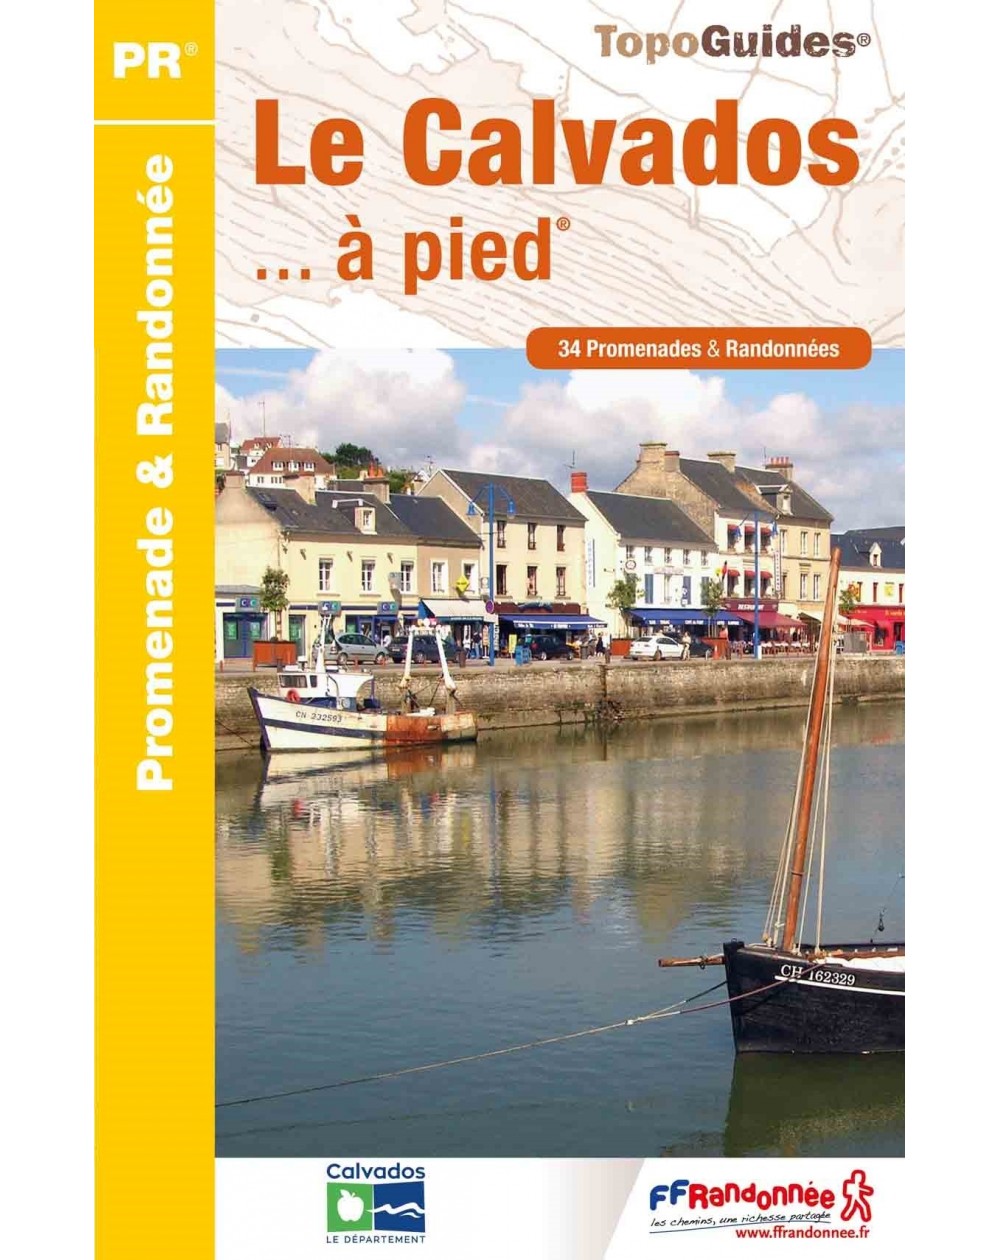 Le Calvados en 34 promenades | Topoguide FFRP